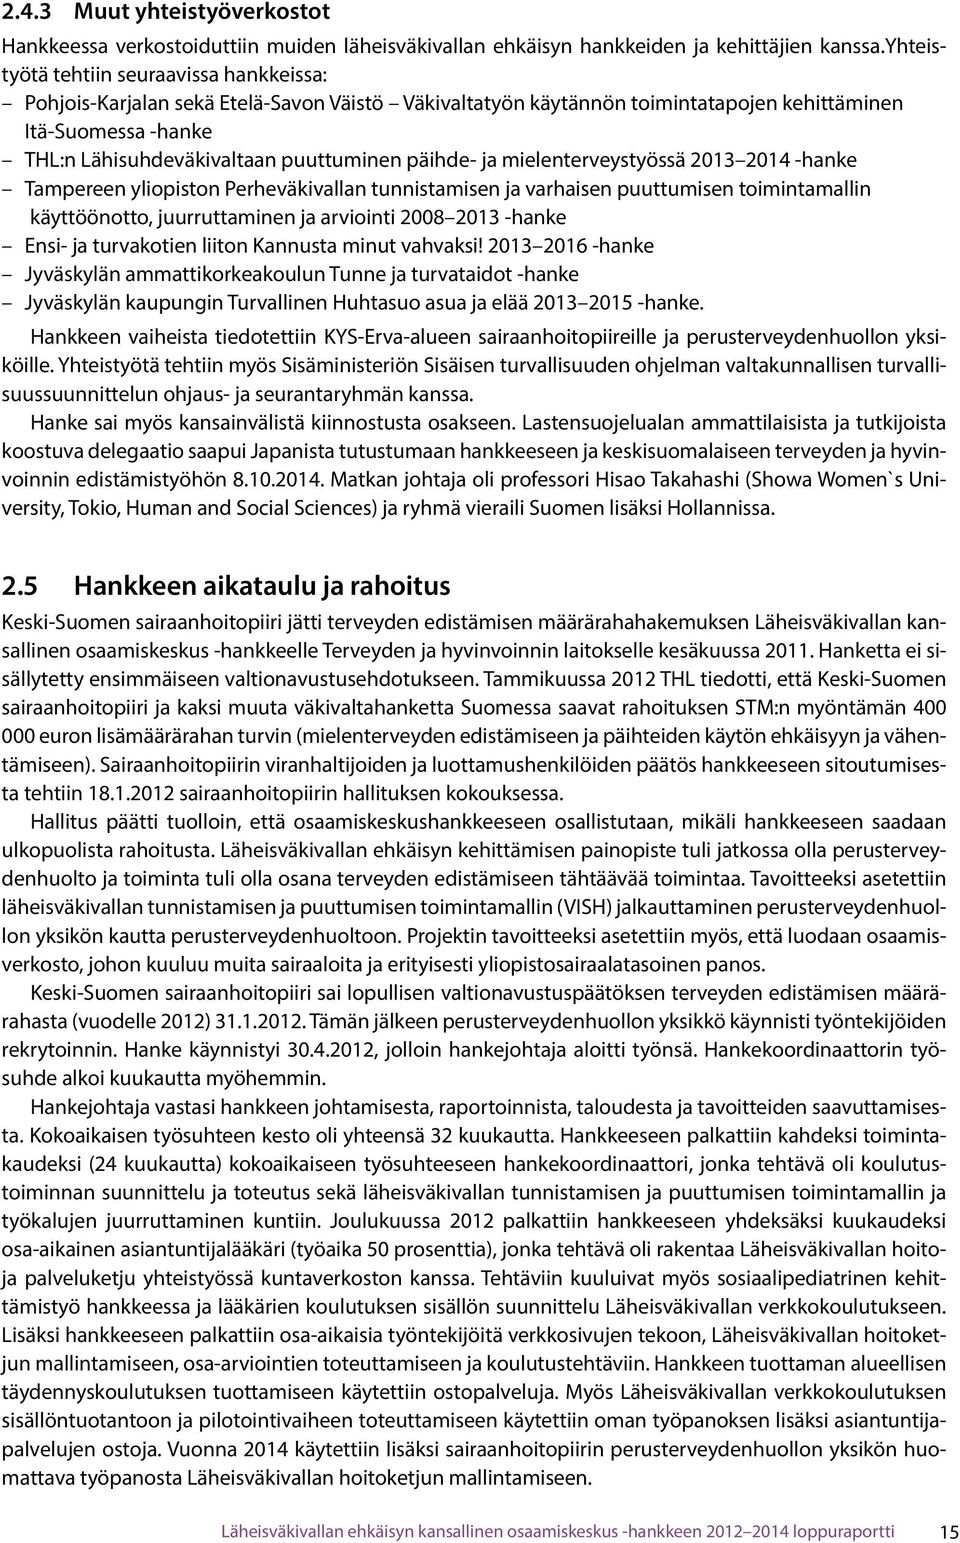 päihde- ja mielenterveystyössä 2013 2014 -hanke Tampereen yliopiston Perheväkivallan tunnistamisen ja varhaisen puuttumisen toimintamallin käyttöönotto, juurruttaminen ja arviointi 2008 2013 -hanke